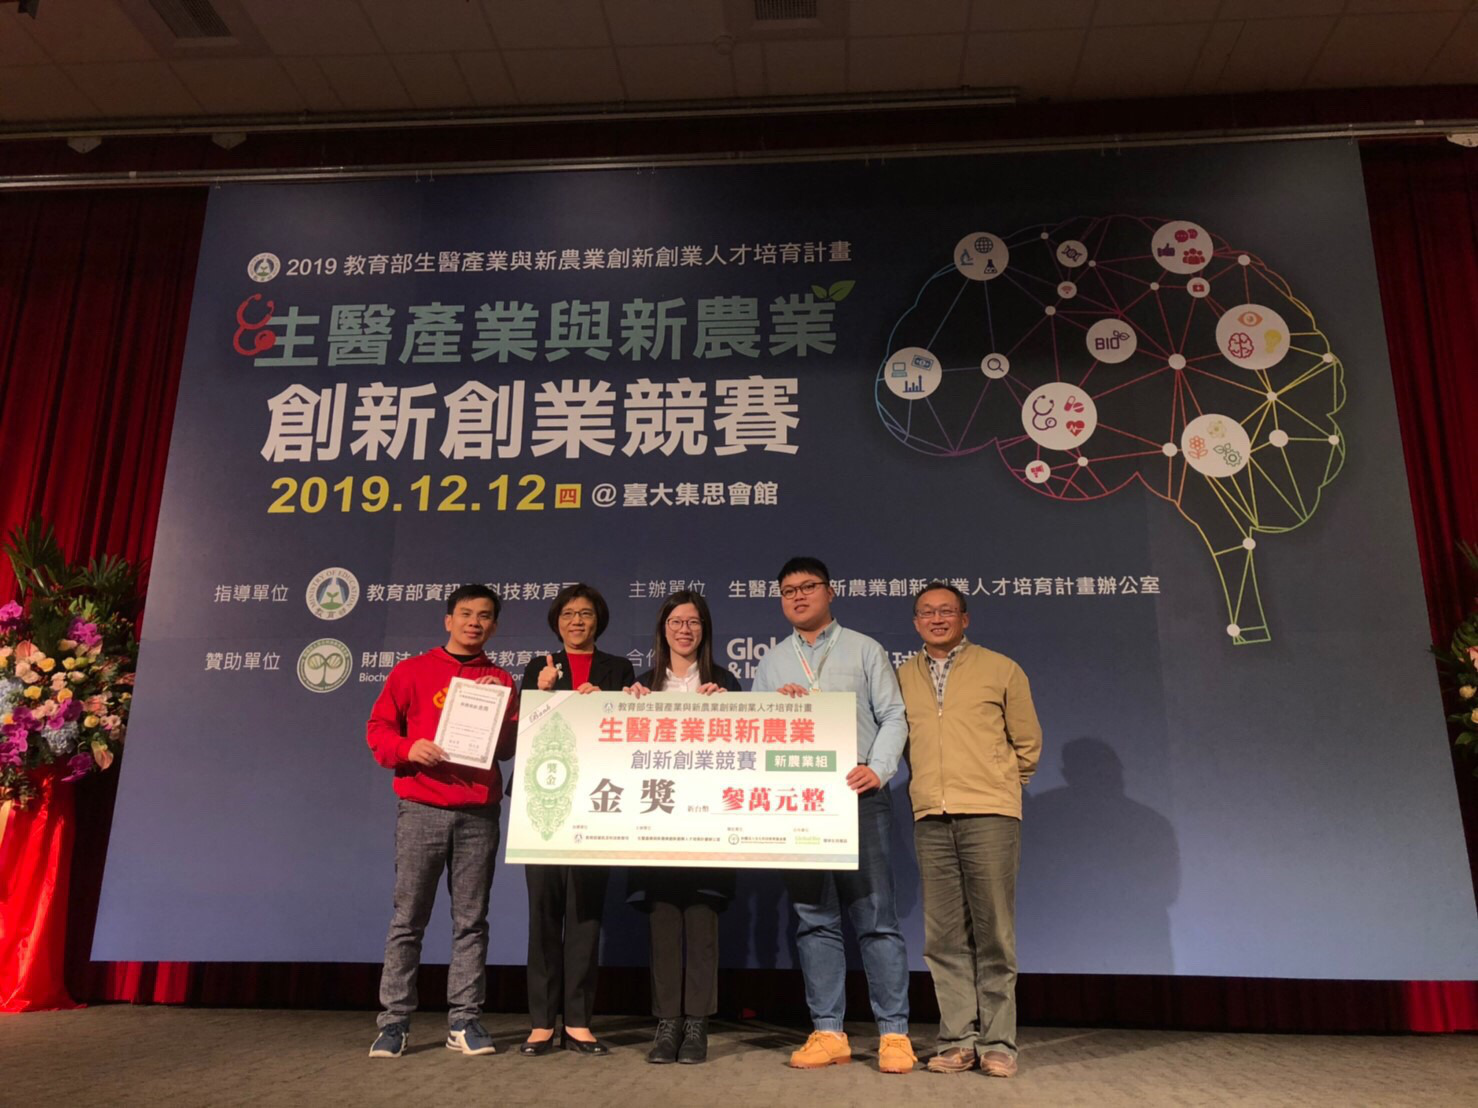 智慧稻草人團隊曾獲「教育部生醫產業與新農業創新創業競賽」獲得金獎